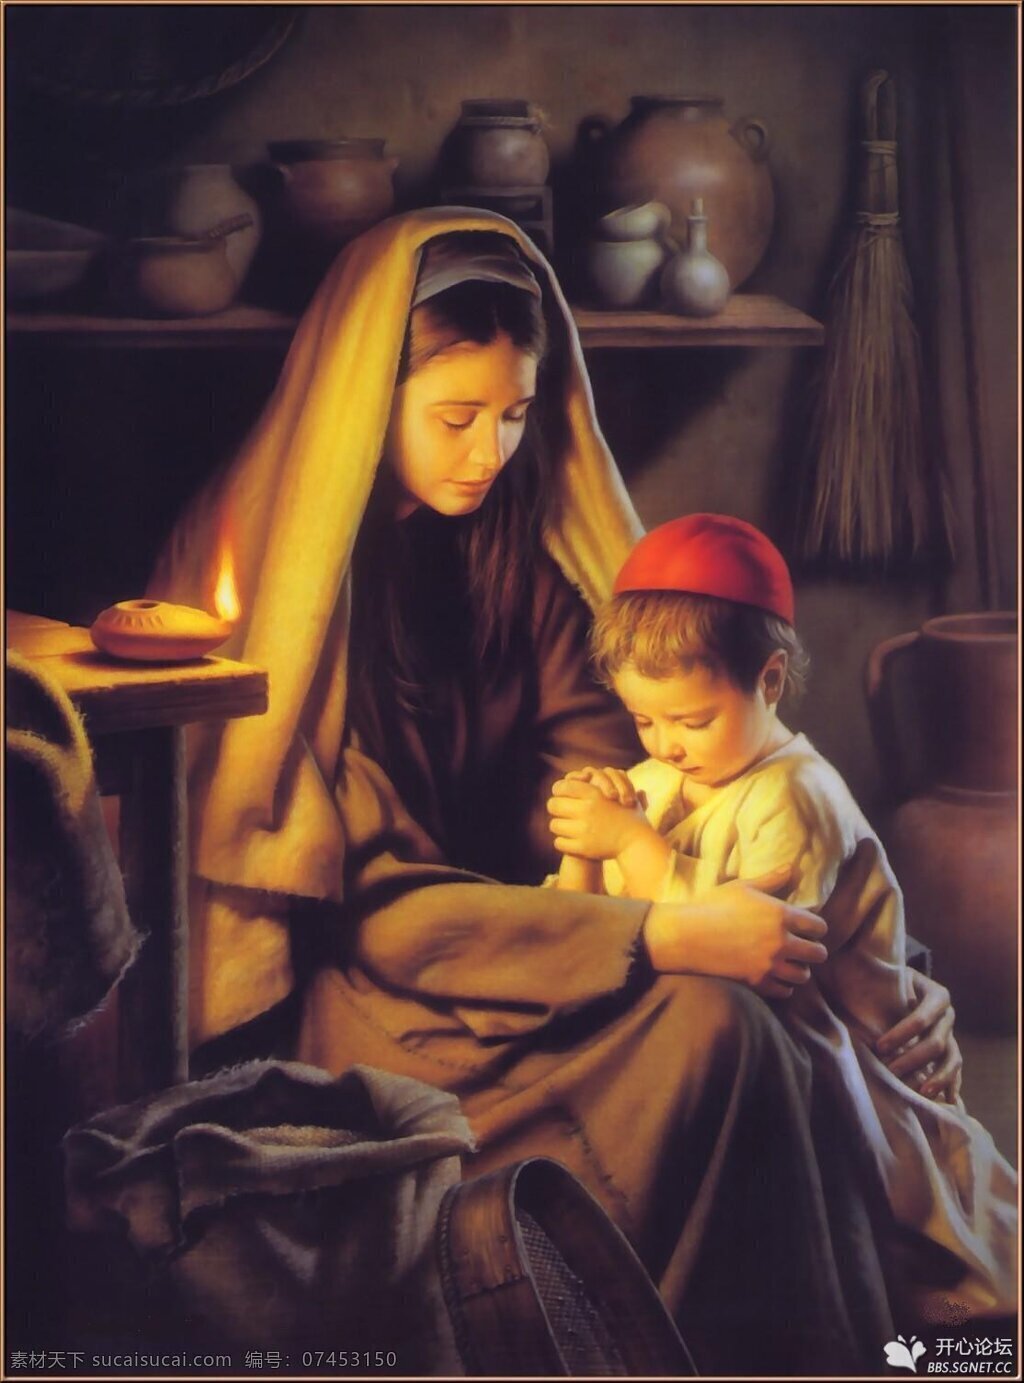 圣母 耶稣 玛利亚 耶稣童年 圣母与耶稣 圣母子 天主教 人物图库 生活人物